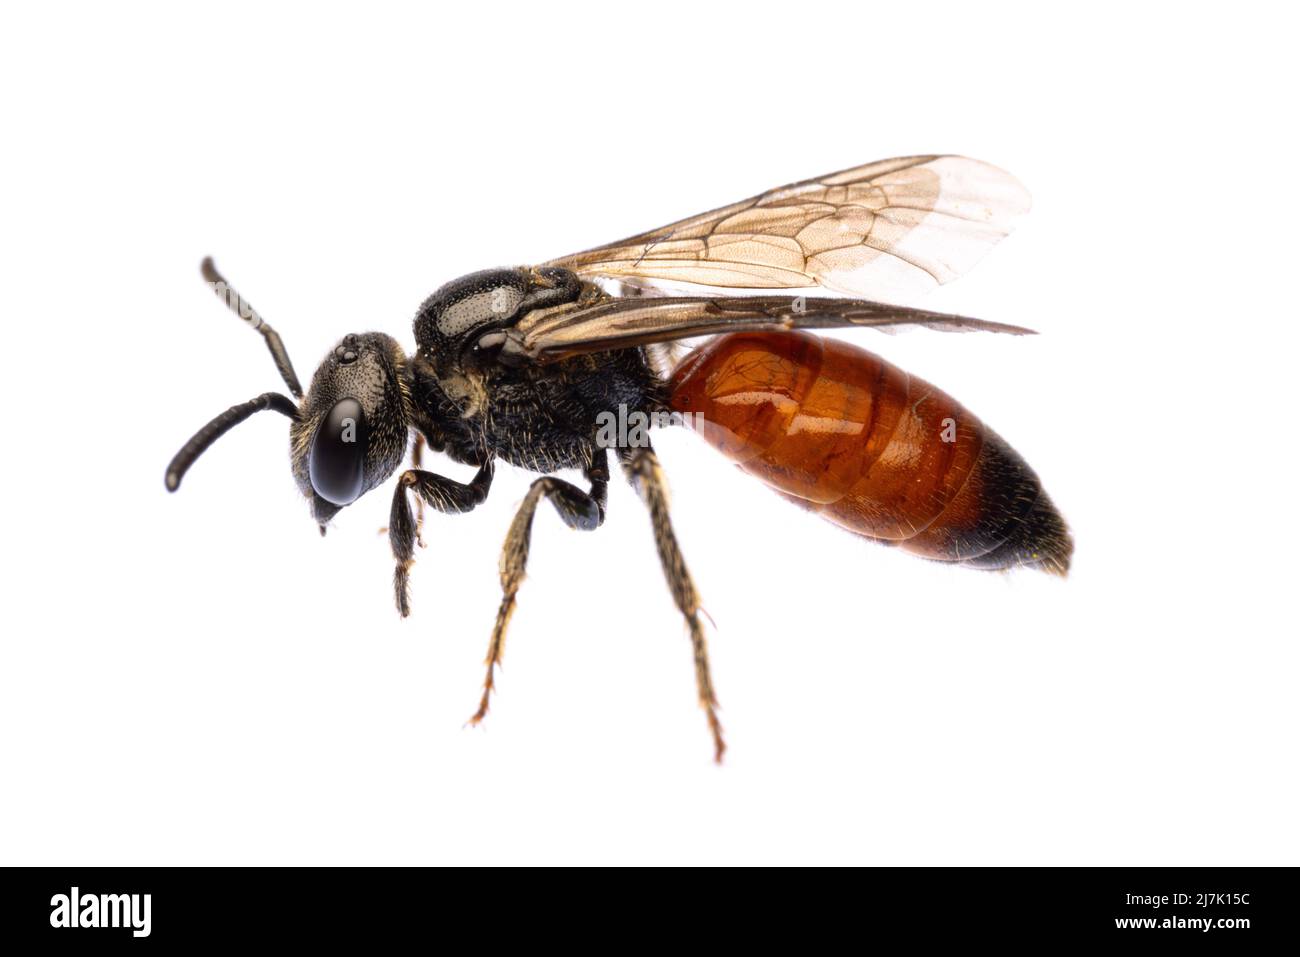 Insectes d'europe - abeilles: Vue latérale de l'abeille sanguine Specodes (blutbiene allemand) isolé sur un fond blanc avec Banque D'Images